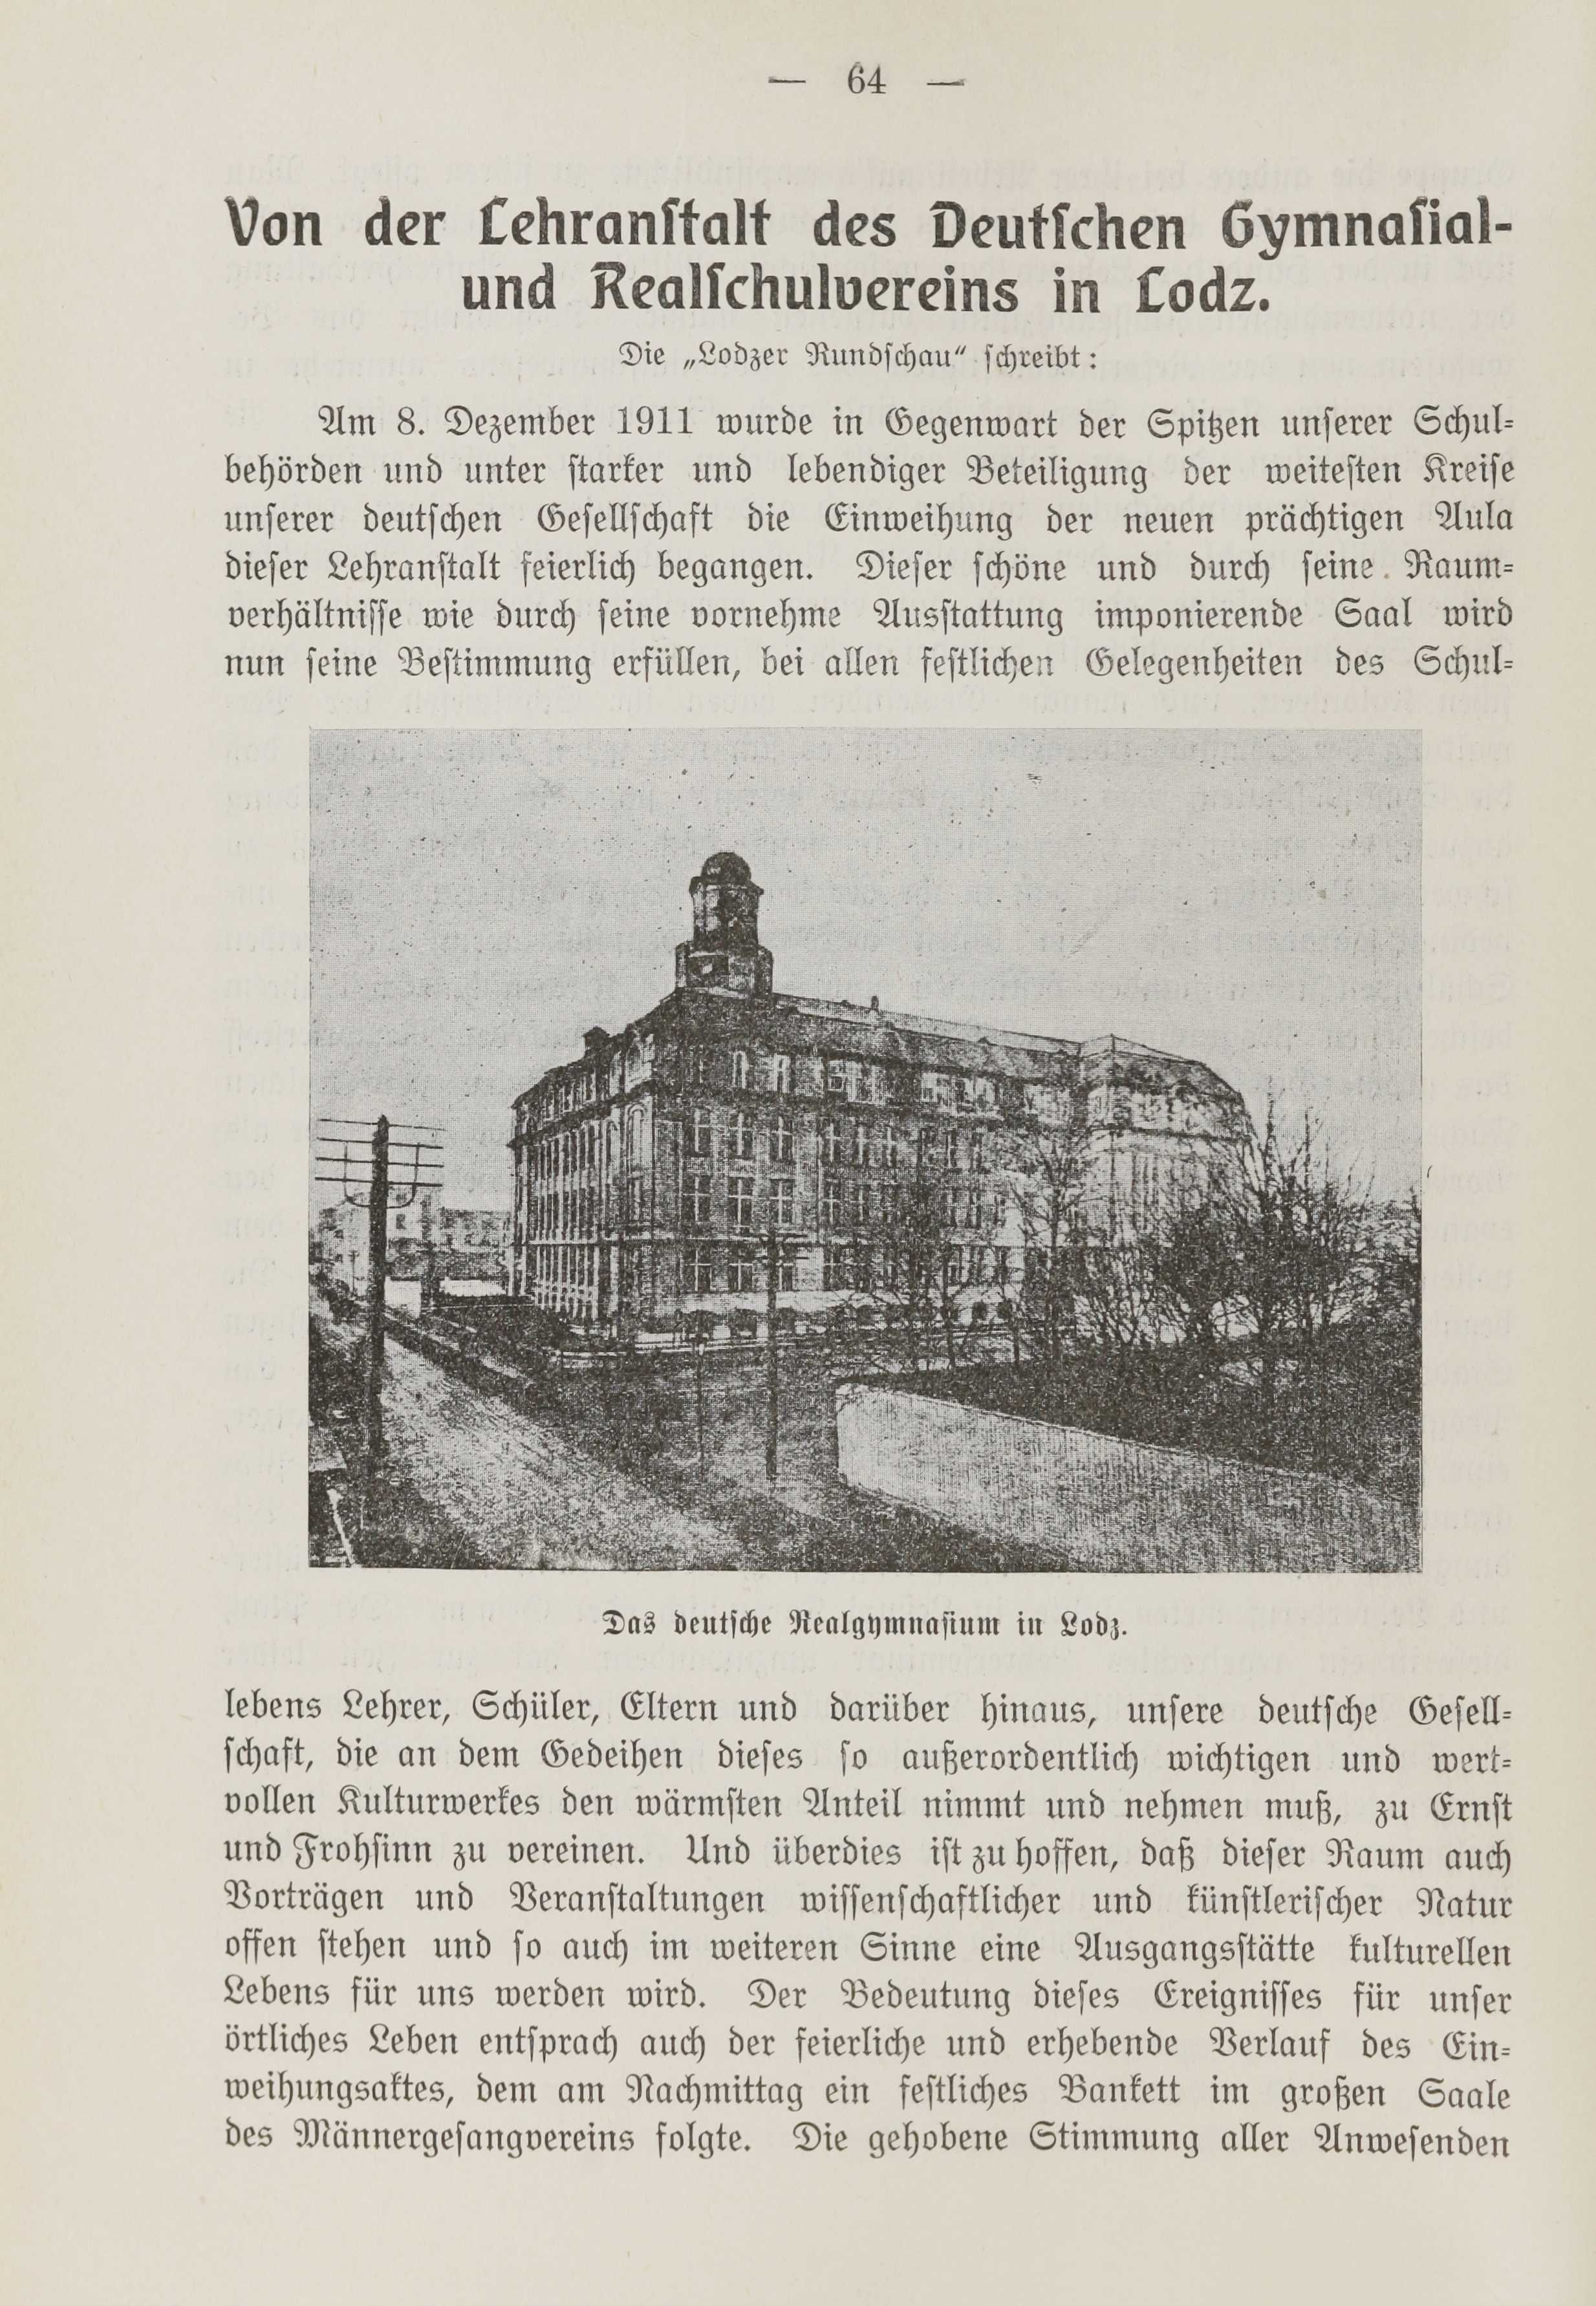 Deutsche Monatsschrift für Russland [1] (1912) | 71. (64) Основной текст